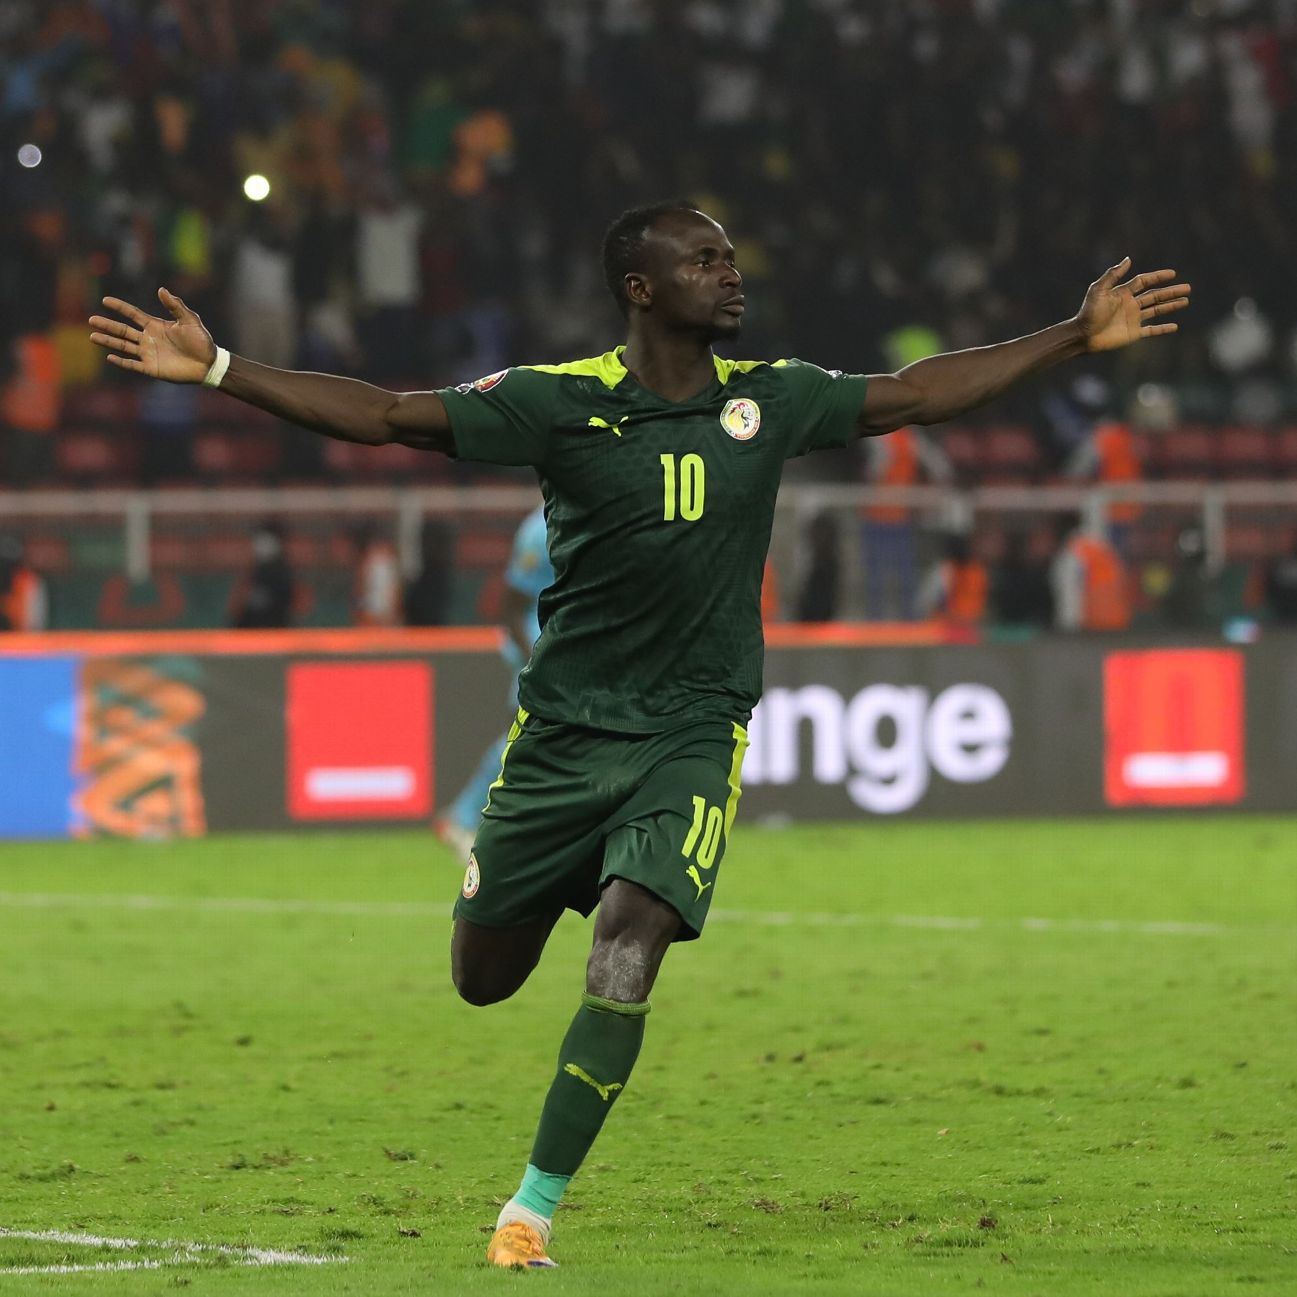 Senegal 0-0 Egypt (Feb 6, 2022) Game Analysis - ESPN